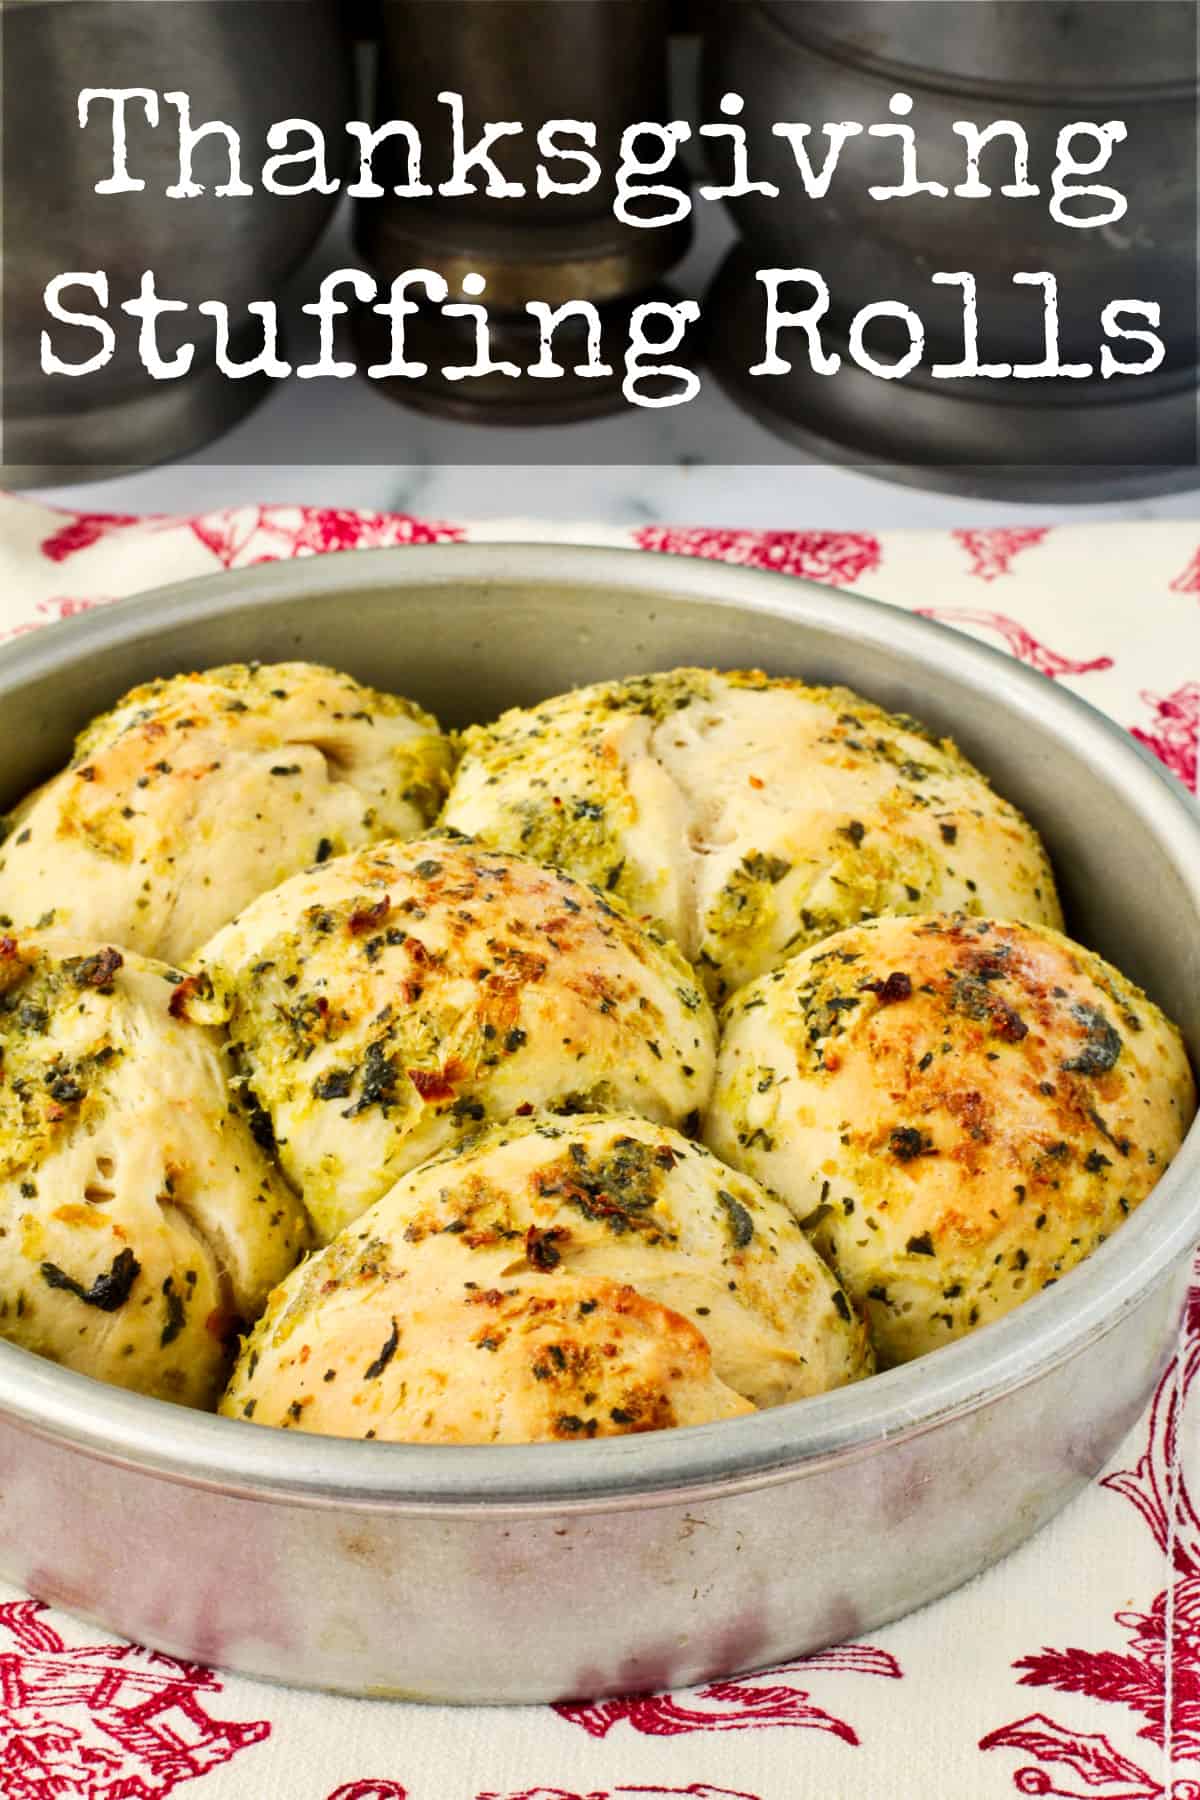 Thanksgiving Stuffing Rolls in cake pans.